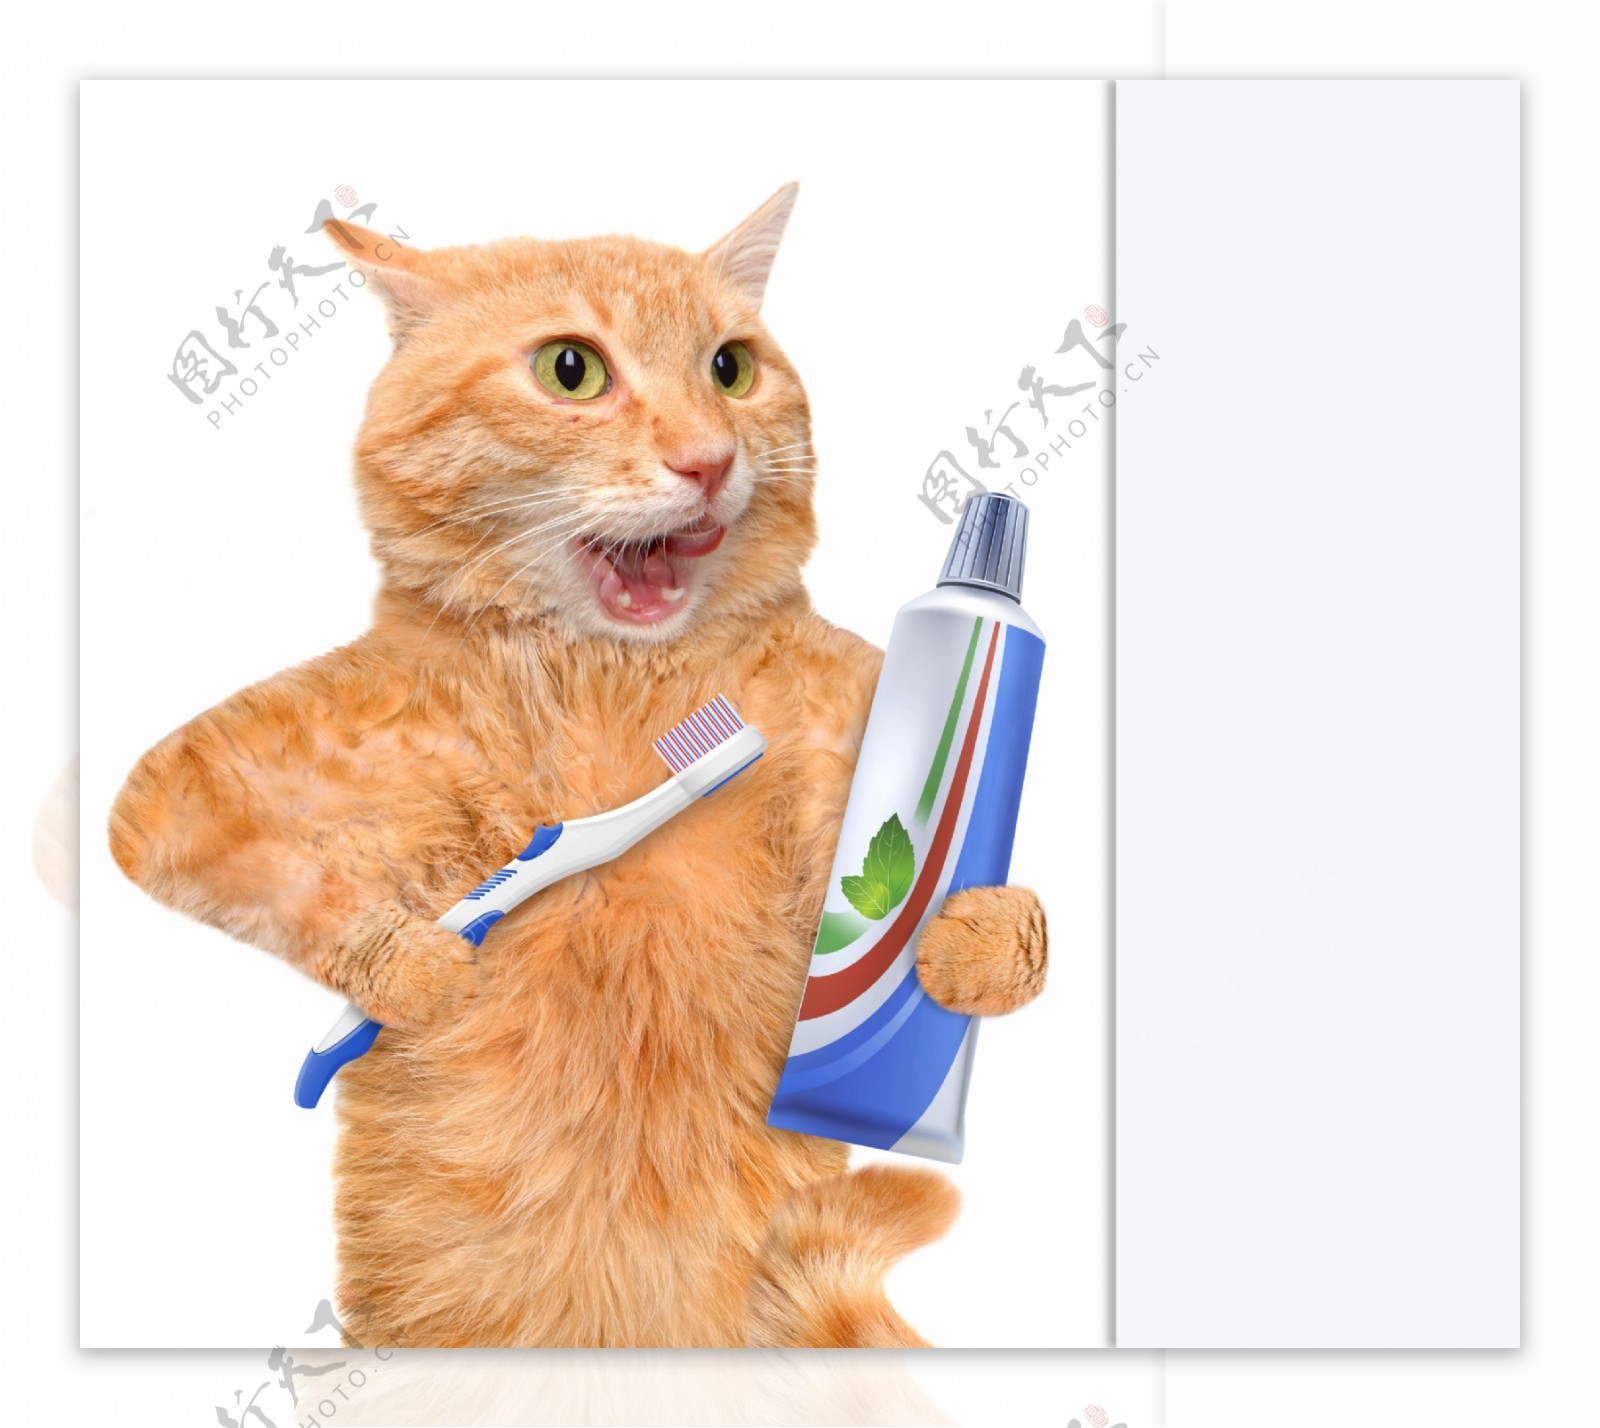 刷牙的小猫